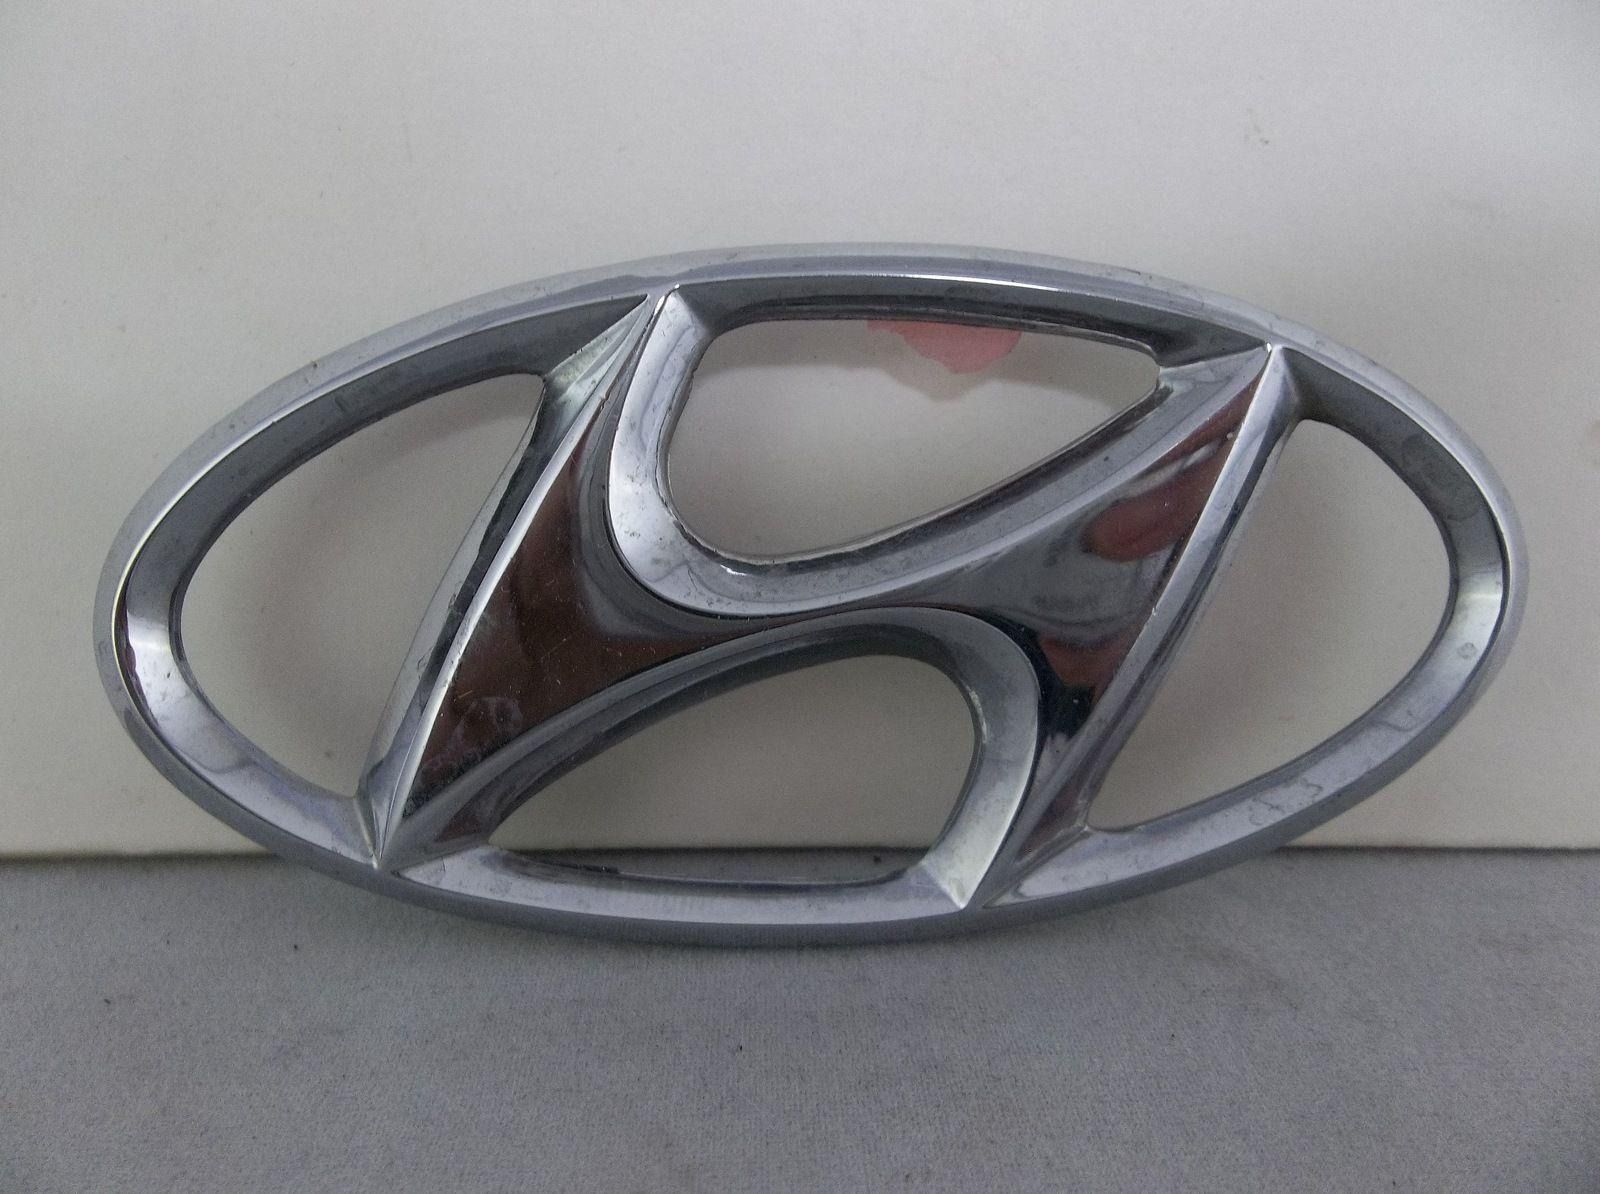 Car Trunk Logo - Chrome Plastic Hyundai Trunk Logo Emblem OEM #Hyundai #Chrome